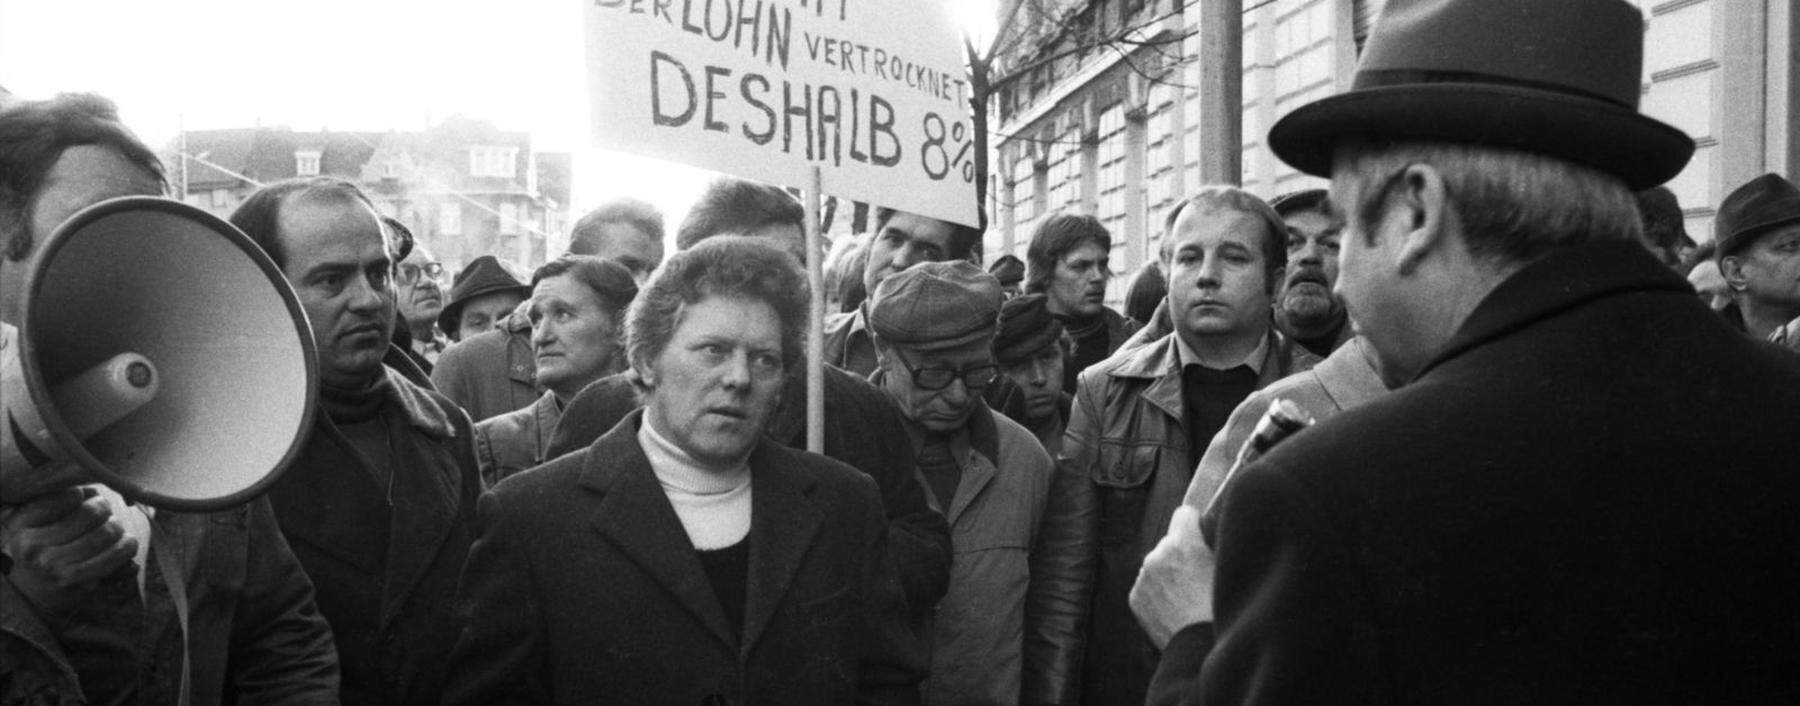 In den 1970er-Jahren drehte sich die Lohn-Preis-Spirale rasant – hier eine Demonstration von Metallarbeitern in Düsseldorf 1976.